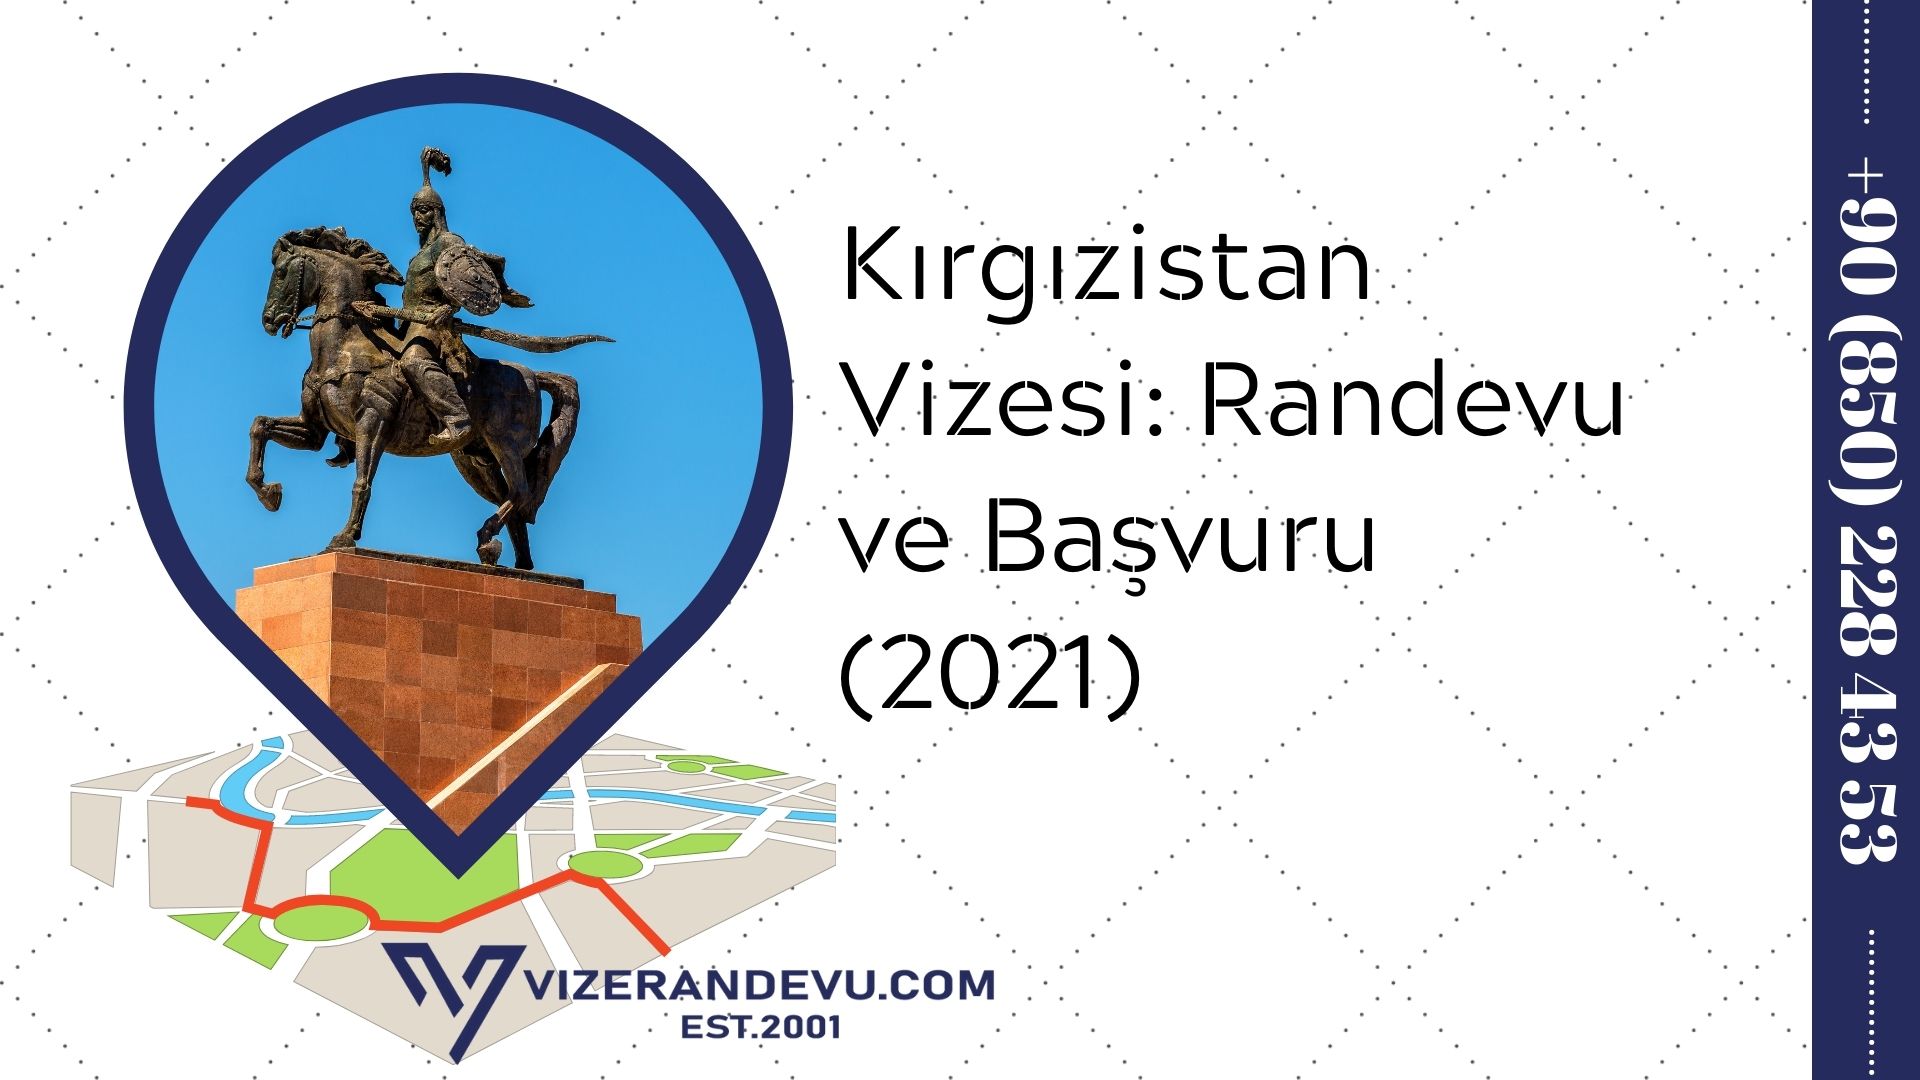 Kırgızistan Vizesi: Randevu ve Başvuru (2021)